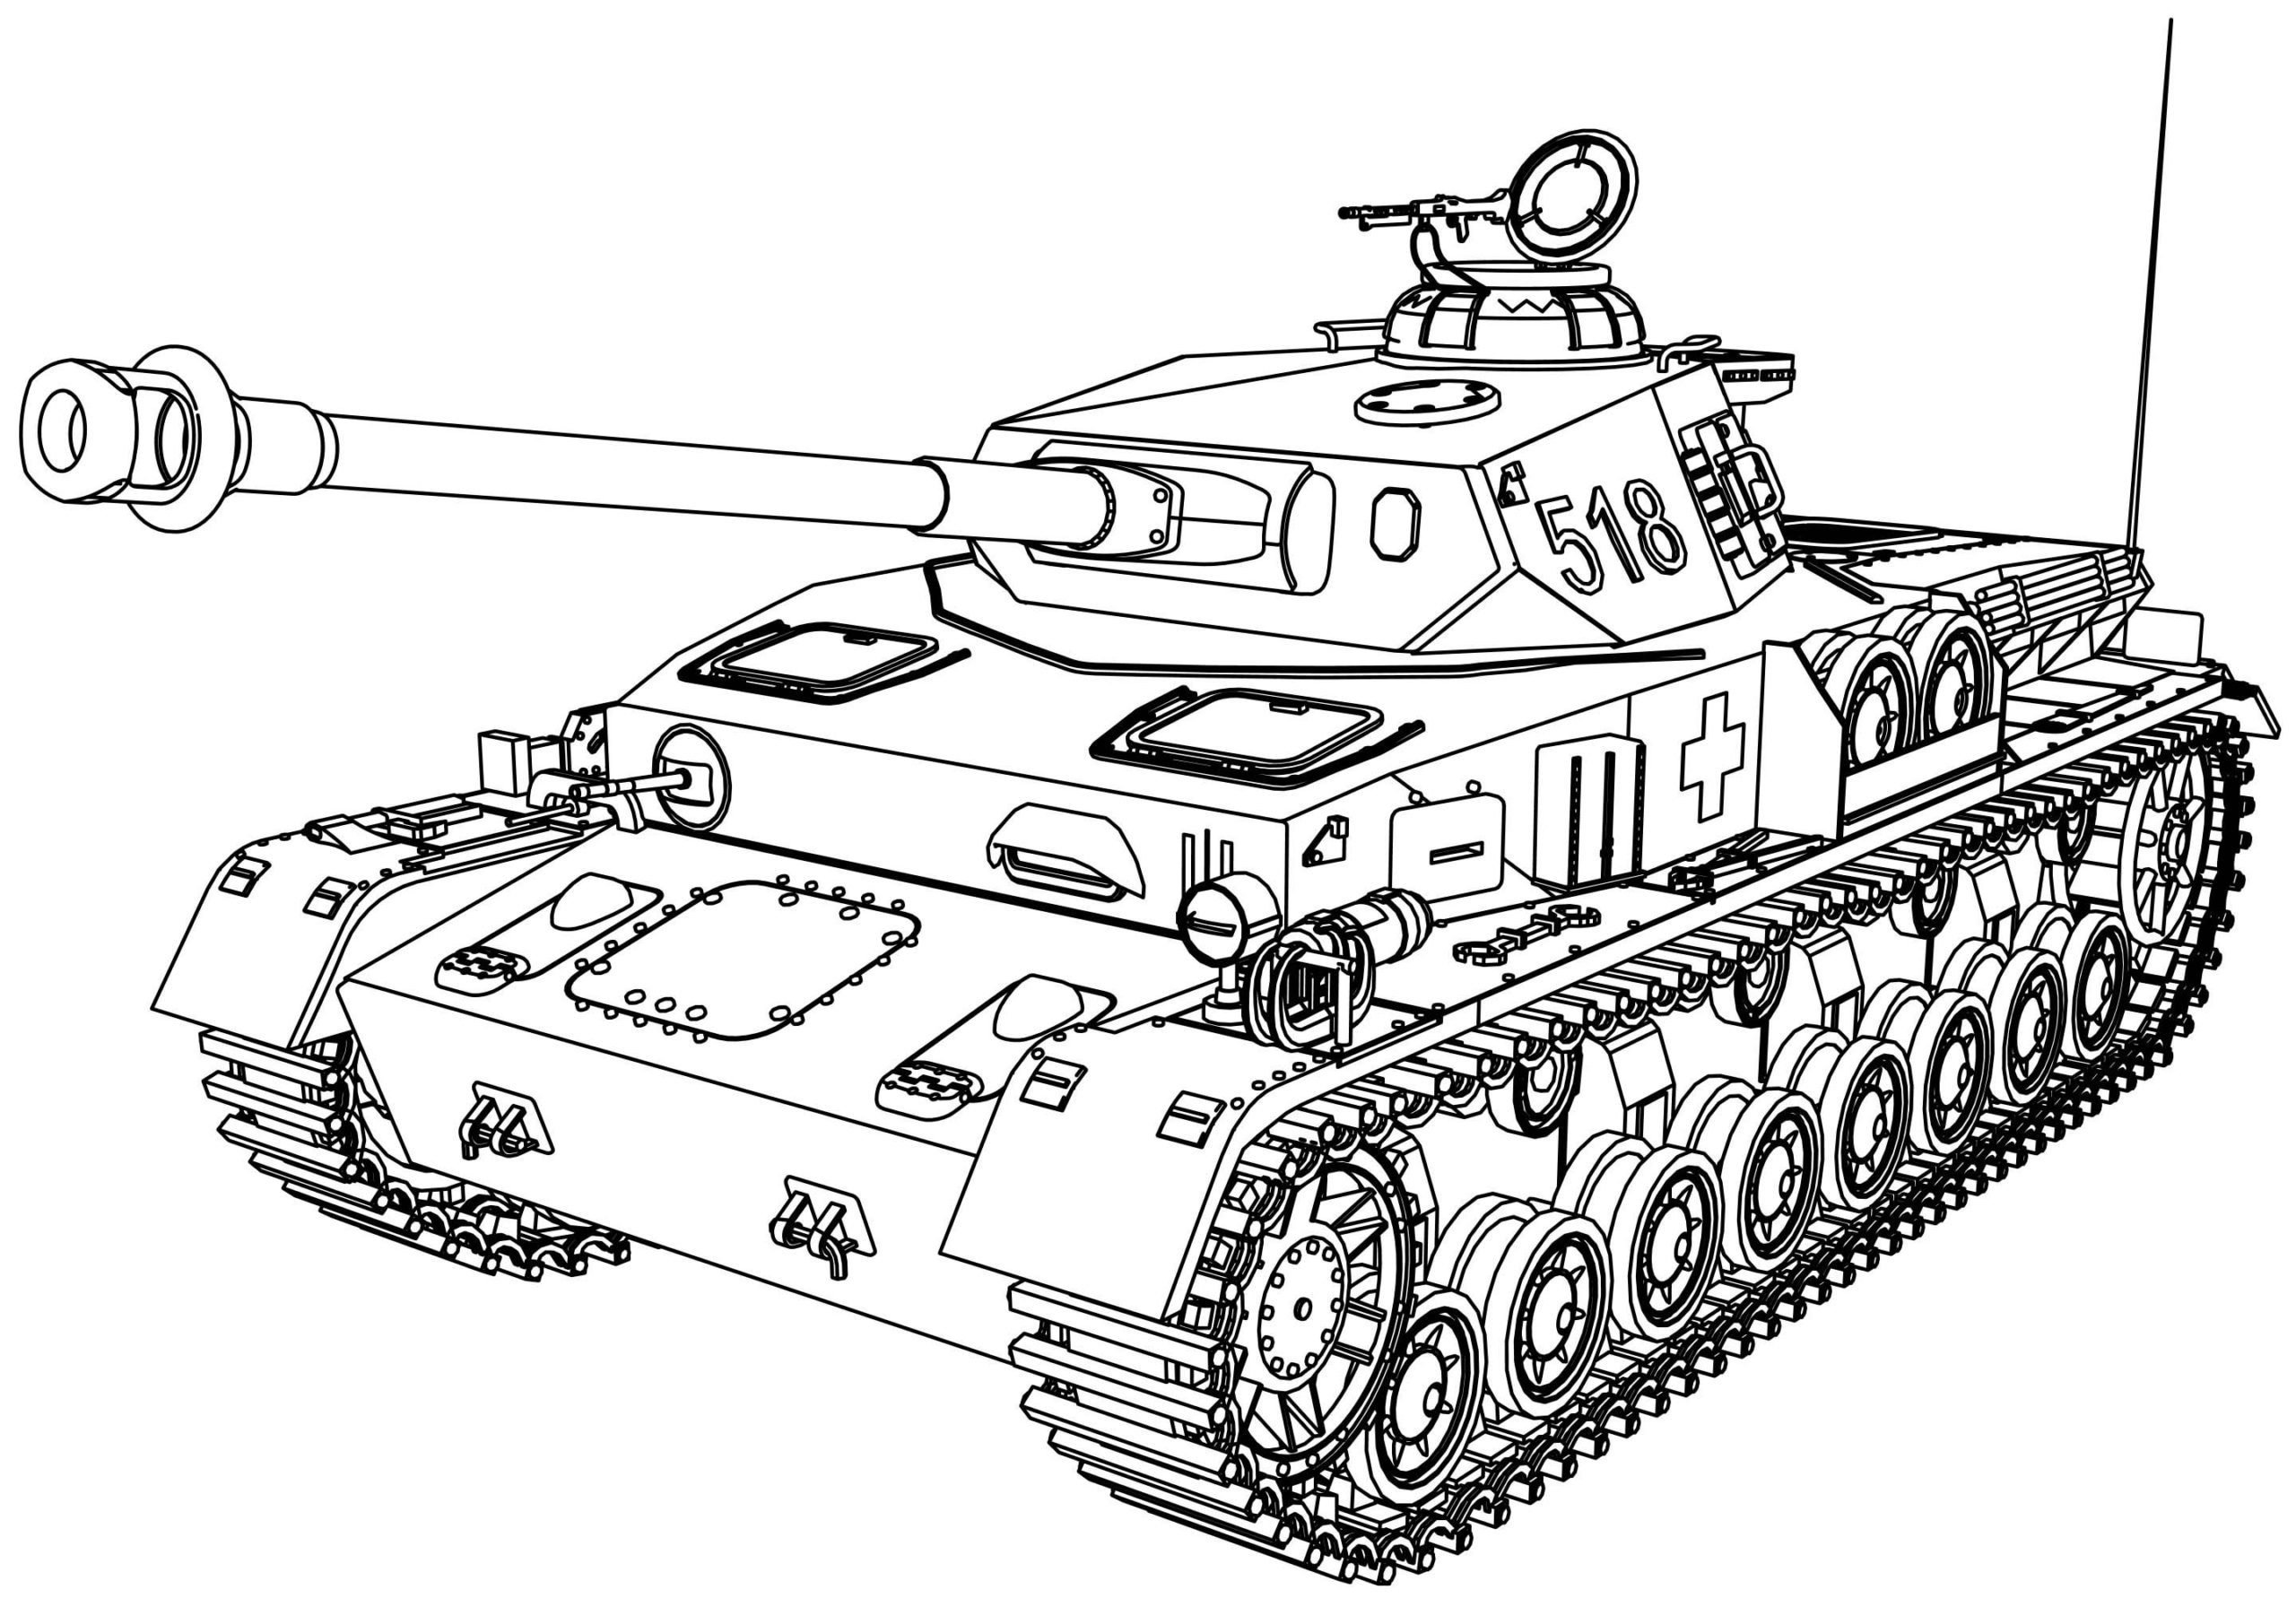 Учимся рисовать тяжелый танк ИС-3